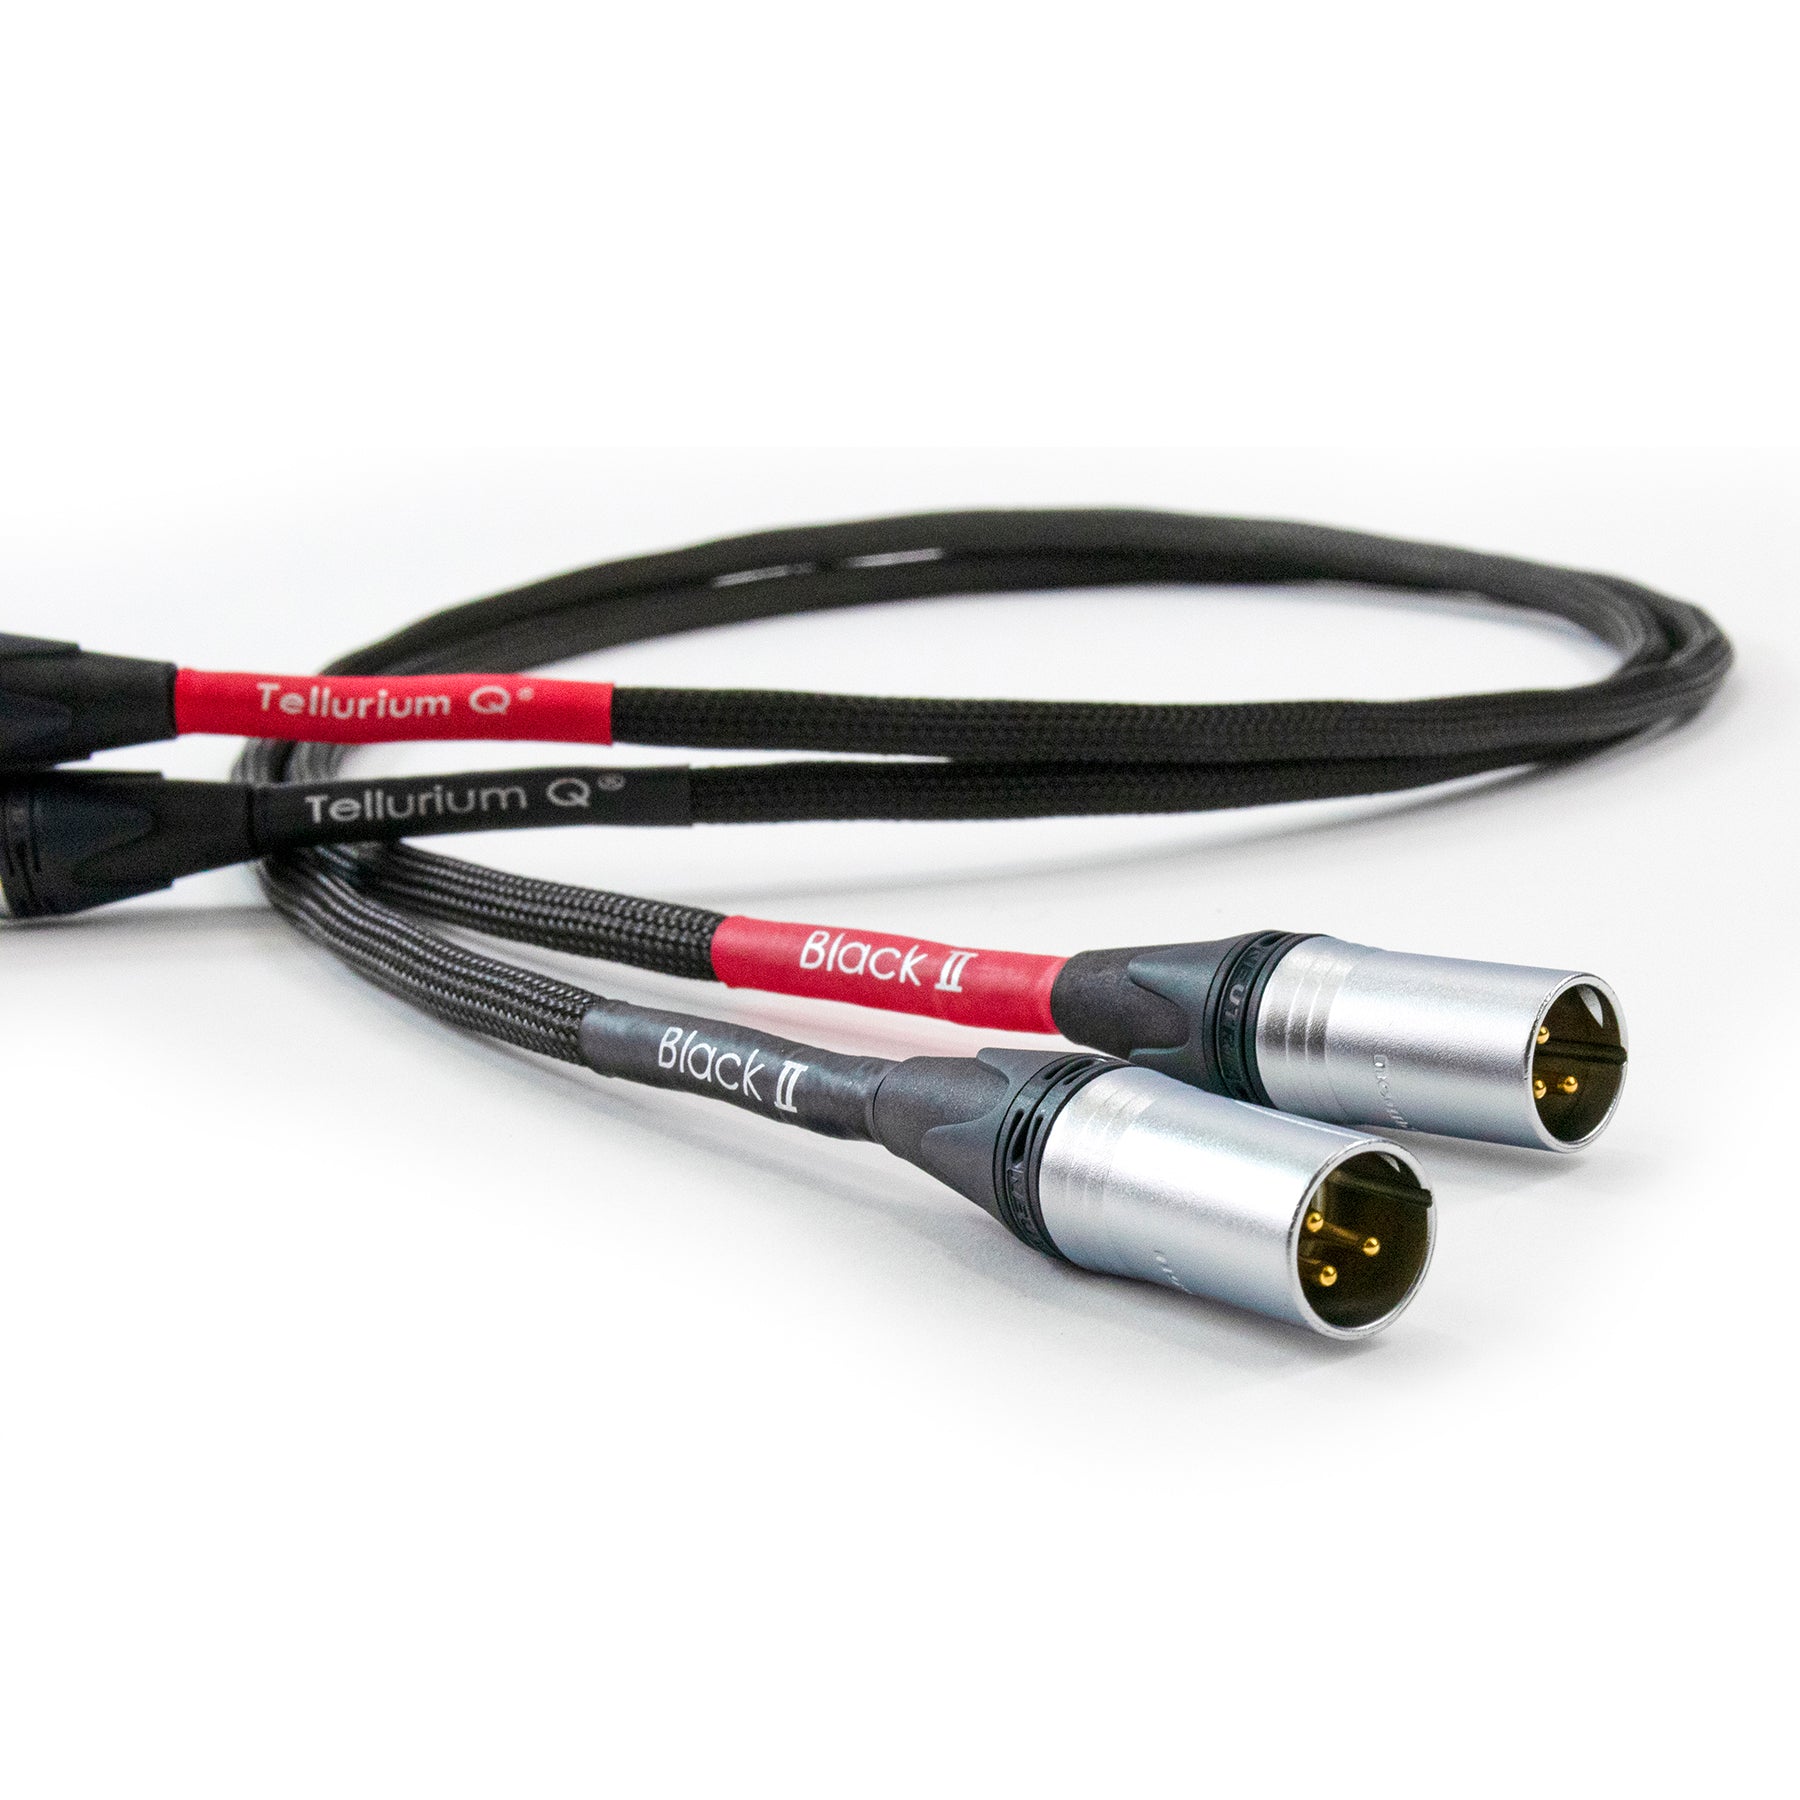 Tellurium Q Black II XLR Interconnect Cable (pair)